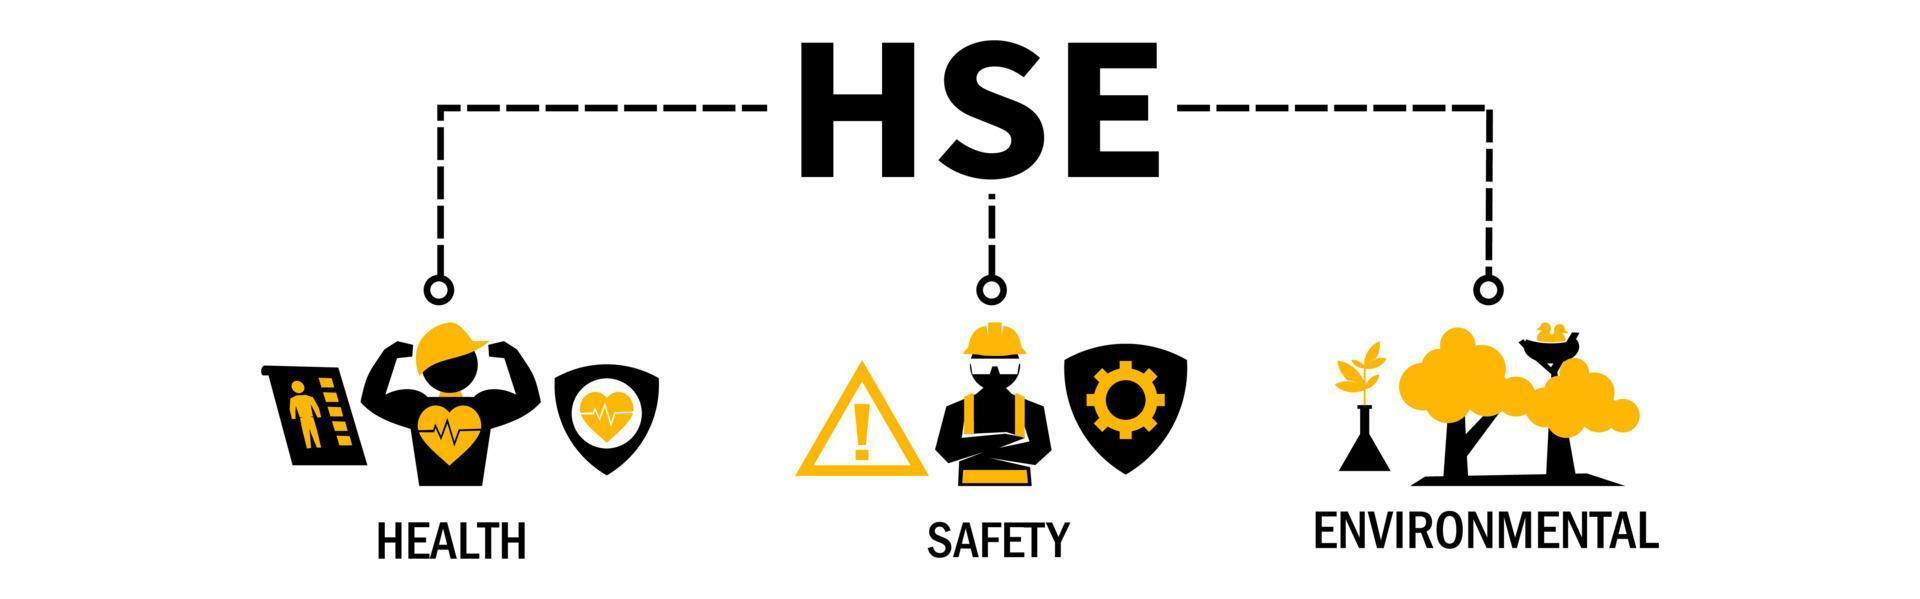 hse vecteur illustration bannière pour santé sécurité environnement acronyme avec icône